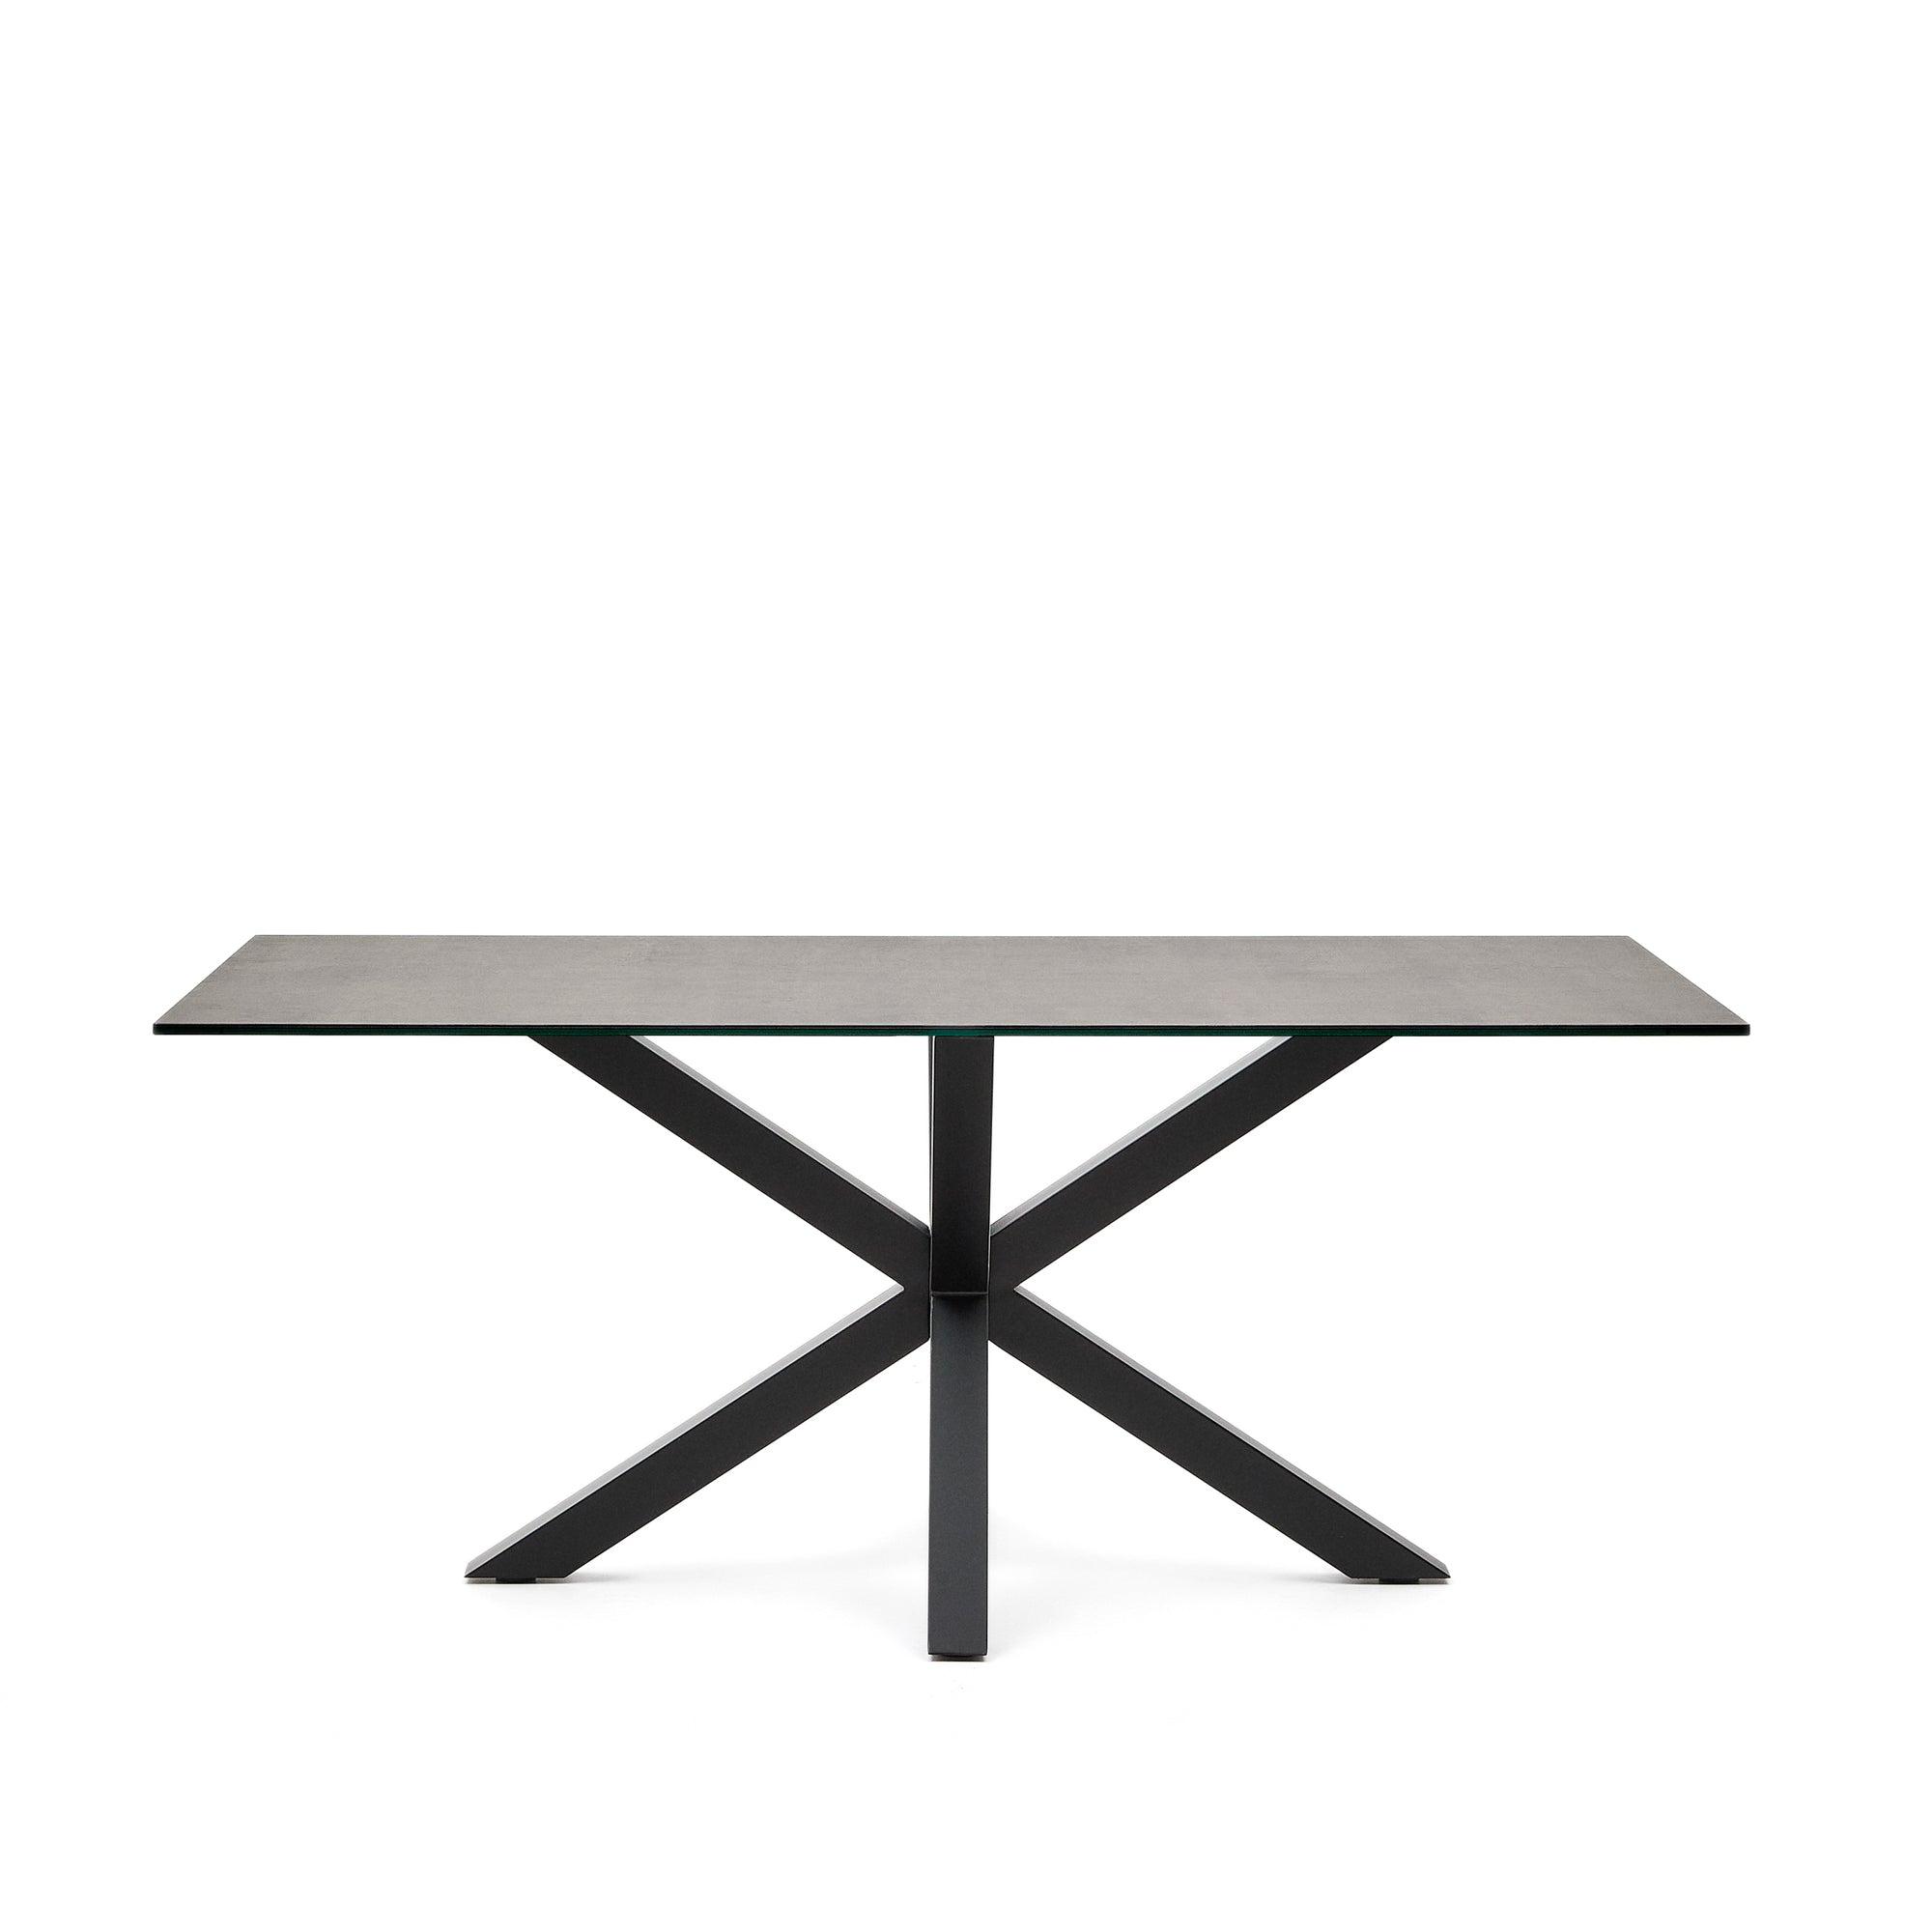 Argo asztal Iron Moss porcelánból és acél lábakkal fekete befejezéssel, 180 x 100 cm